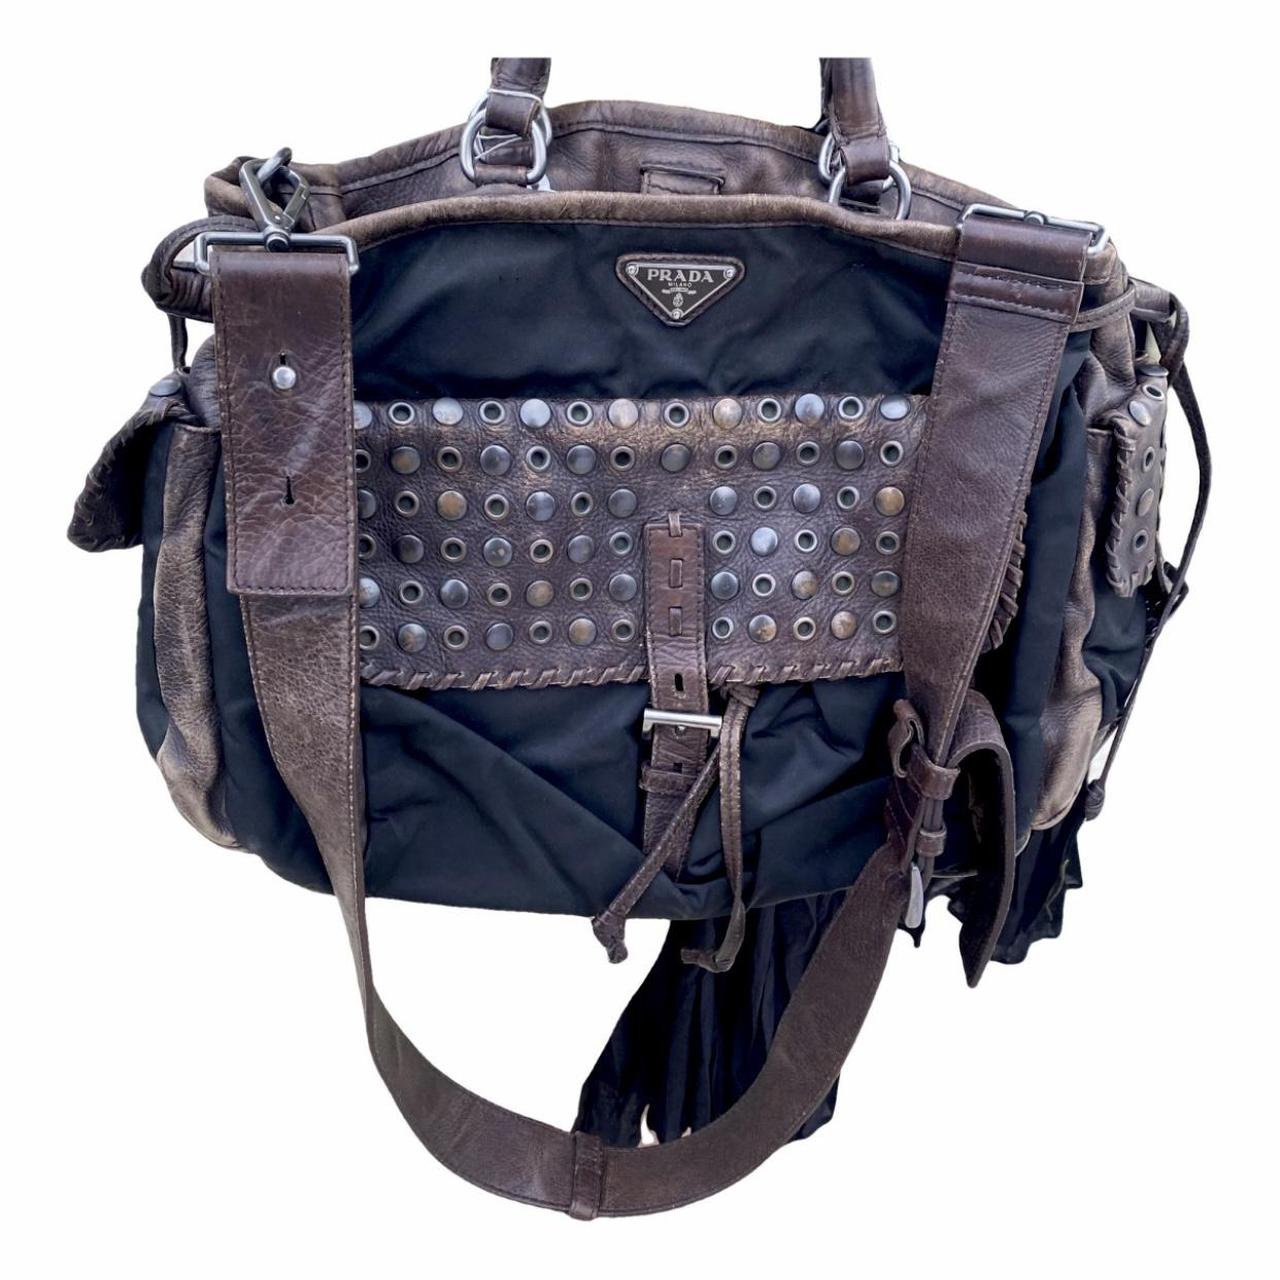 Prada Vintage - Studded Nylon Shoulder Bag - Black - Leather